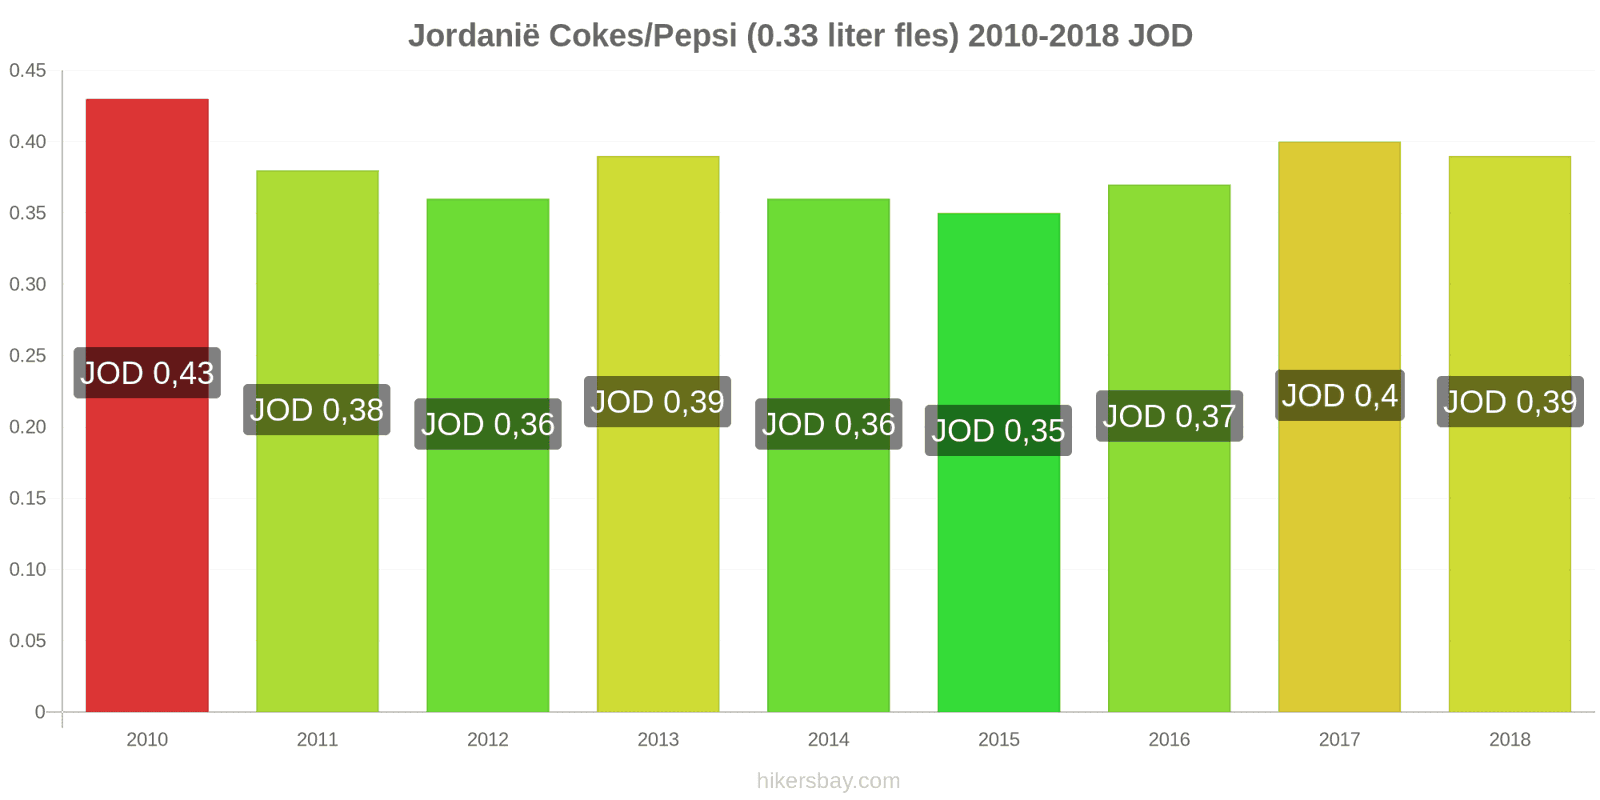 Jordanië prijswijzigingen Coca-Cola/Pepsi (0.33 liter fles) hikersbay.com